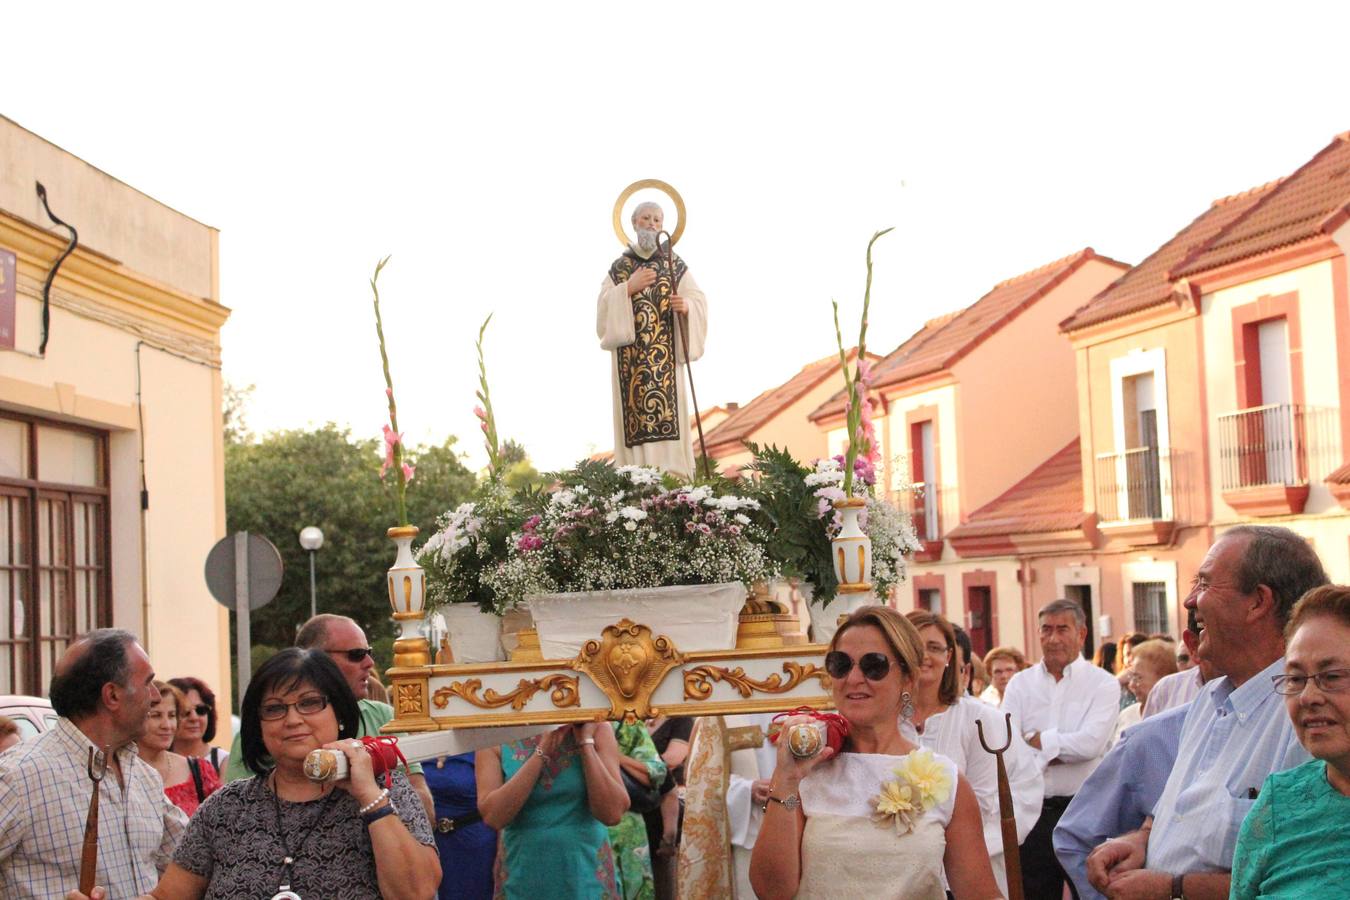 El domingo volverá a salir San Ginés en procesión llevado por los vecinos de la barriada norte de Guareña.